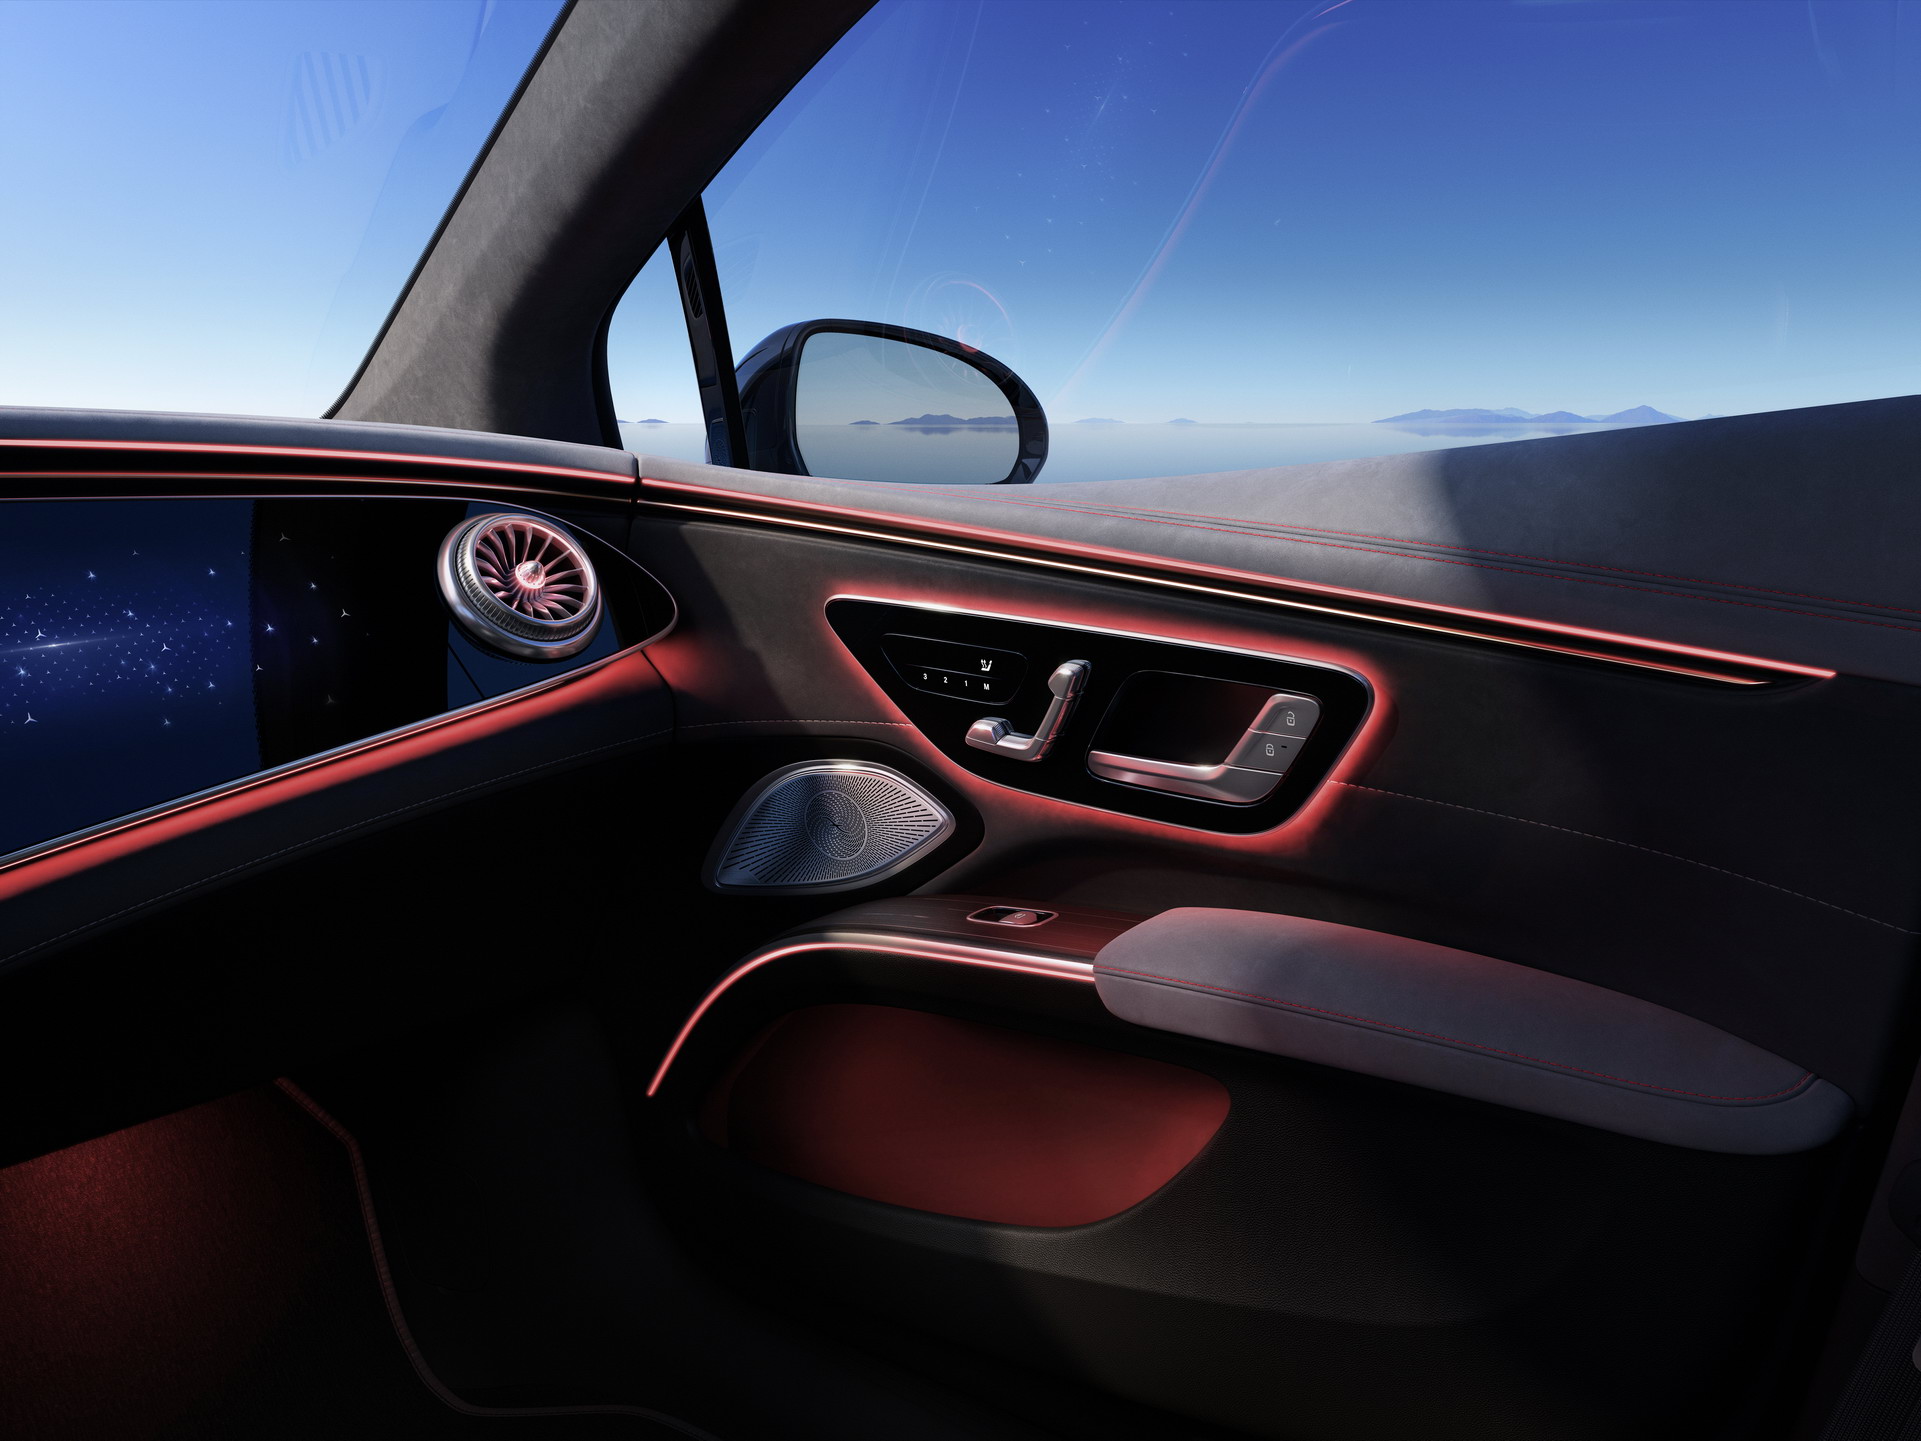 Siêu phẩm xe điện Mercedes-Benz EQS chính thức ra mắt: Tầm hoạt động 770 km, hiện đại như robot - Ảnh 5.